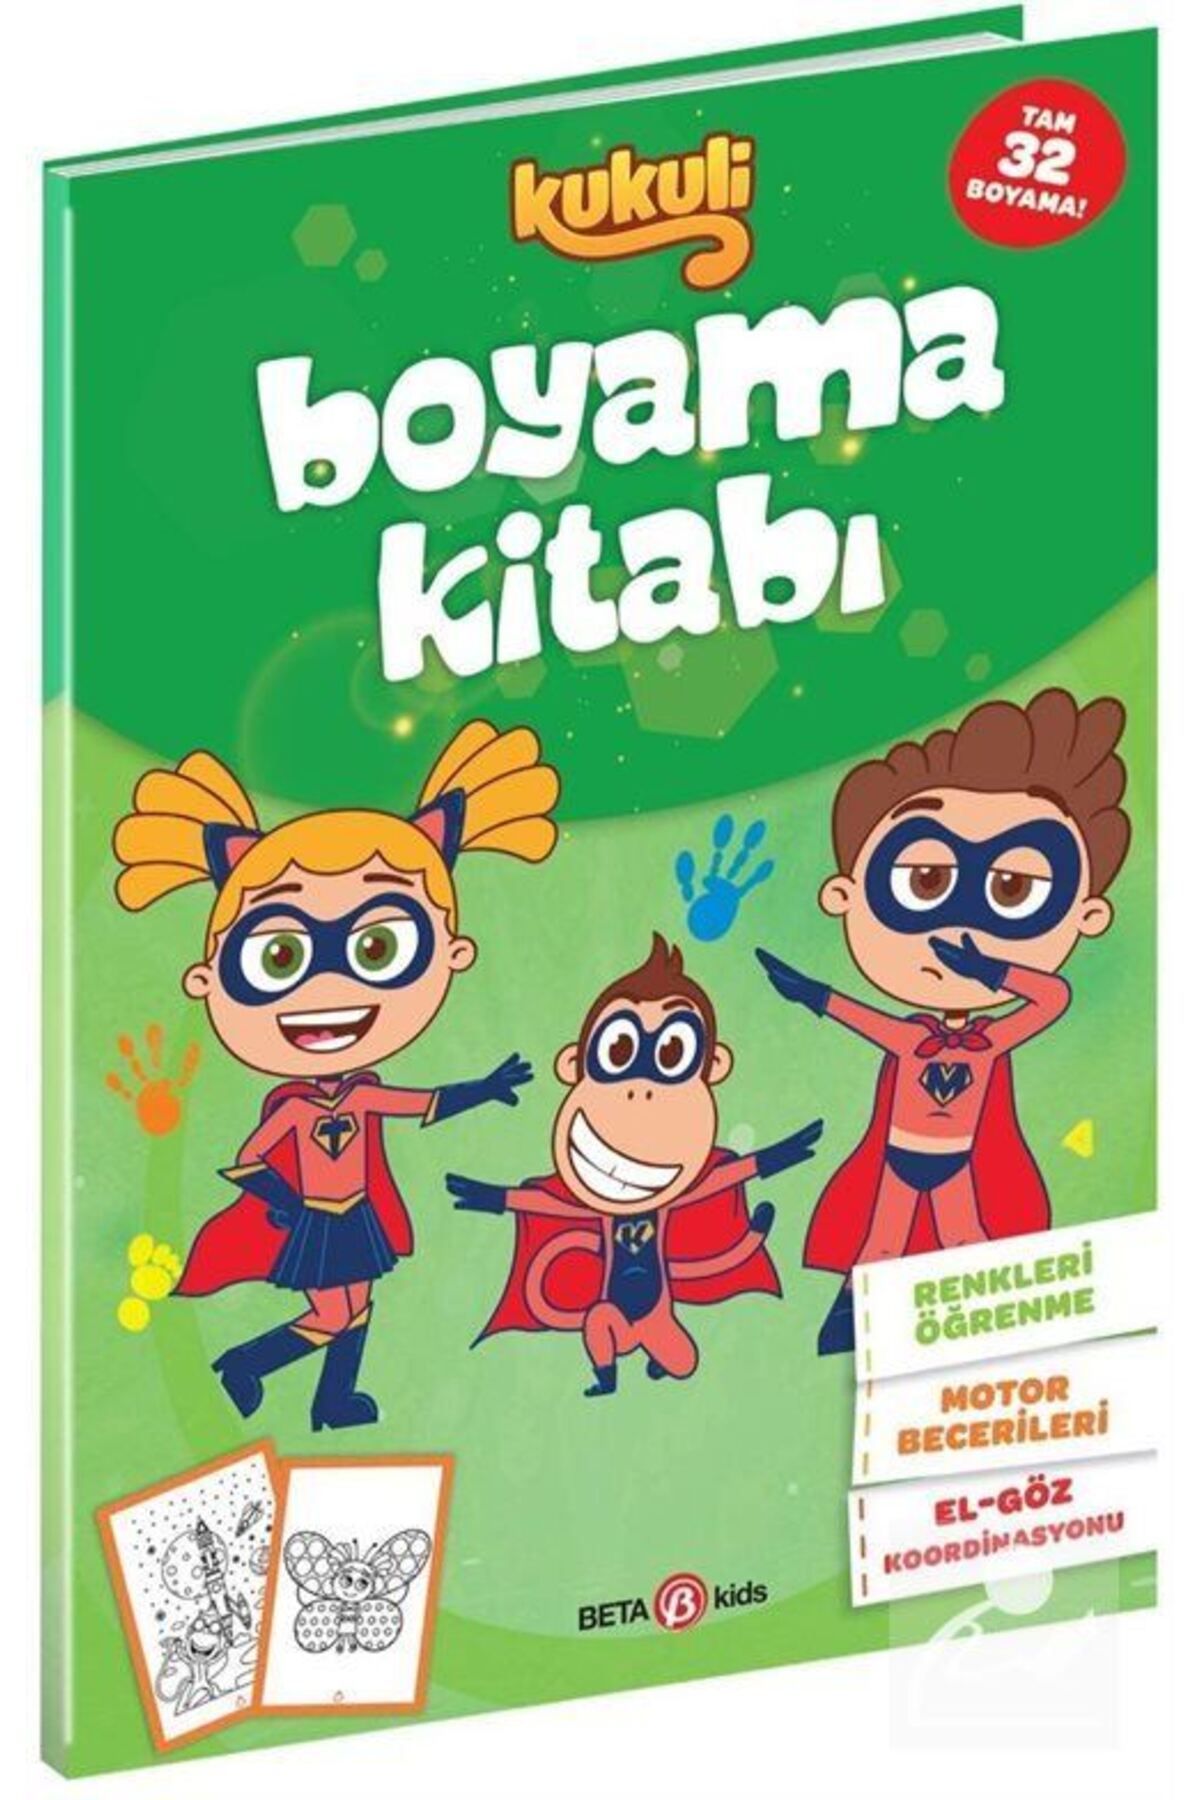 Beta Kids Kukuli Boyama Kitabı